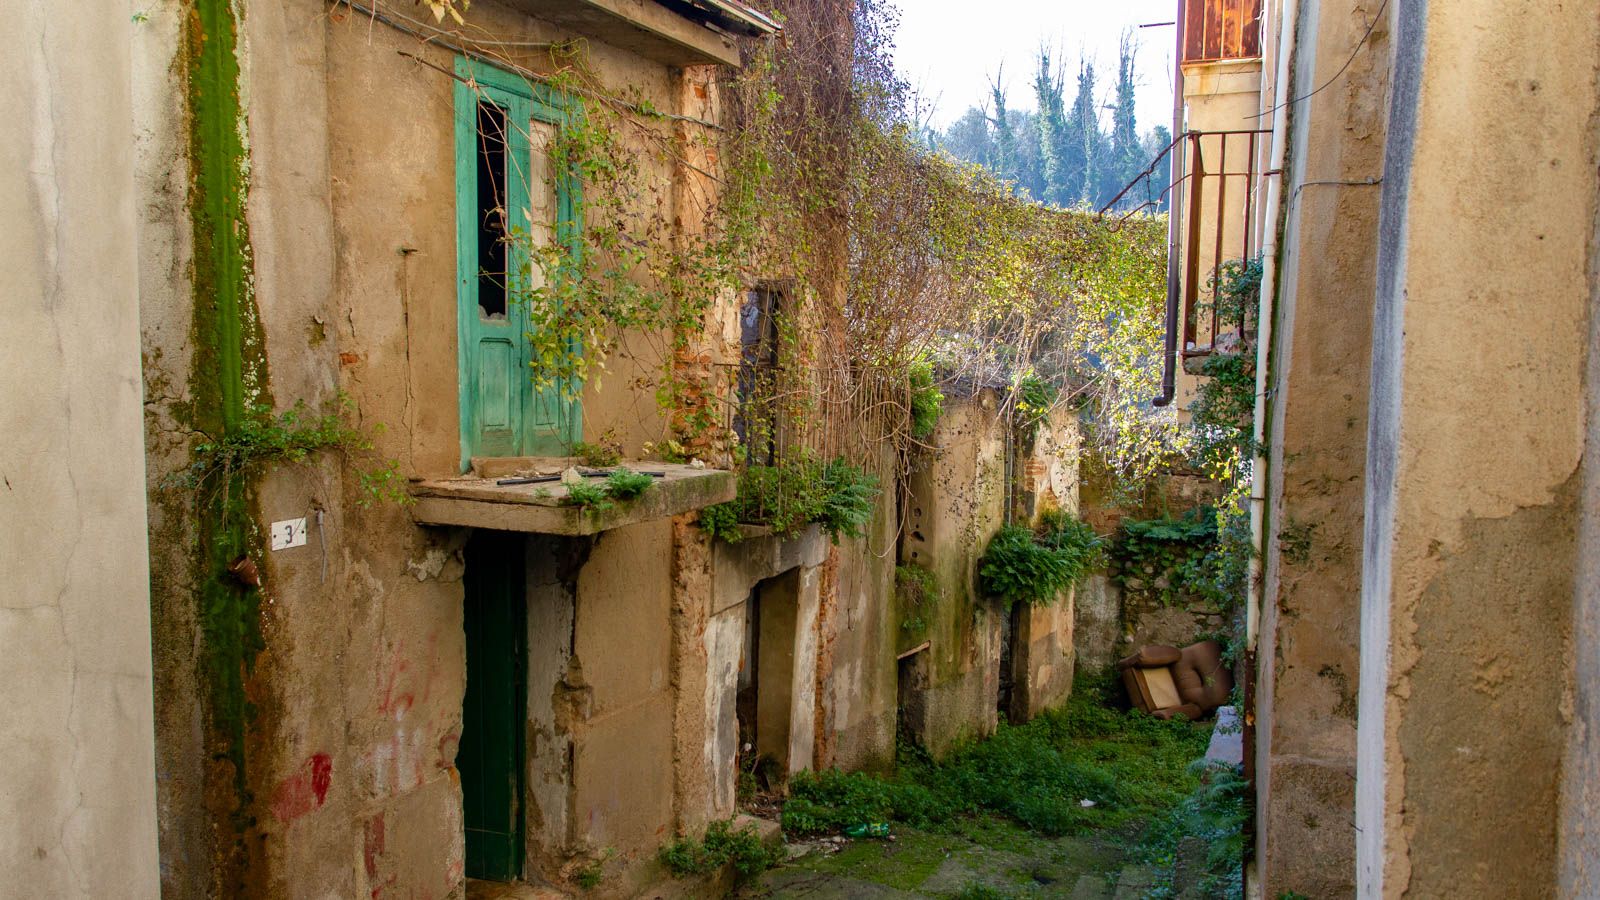 Descubrir 49+ imagen casas de un euro italia Abzlocal.mx